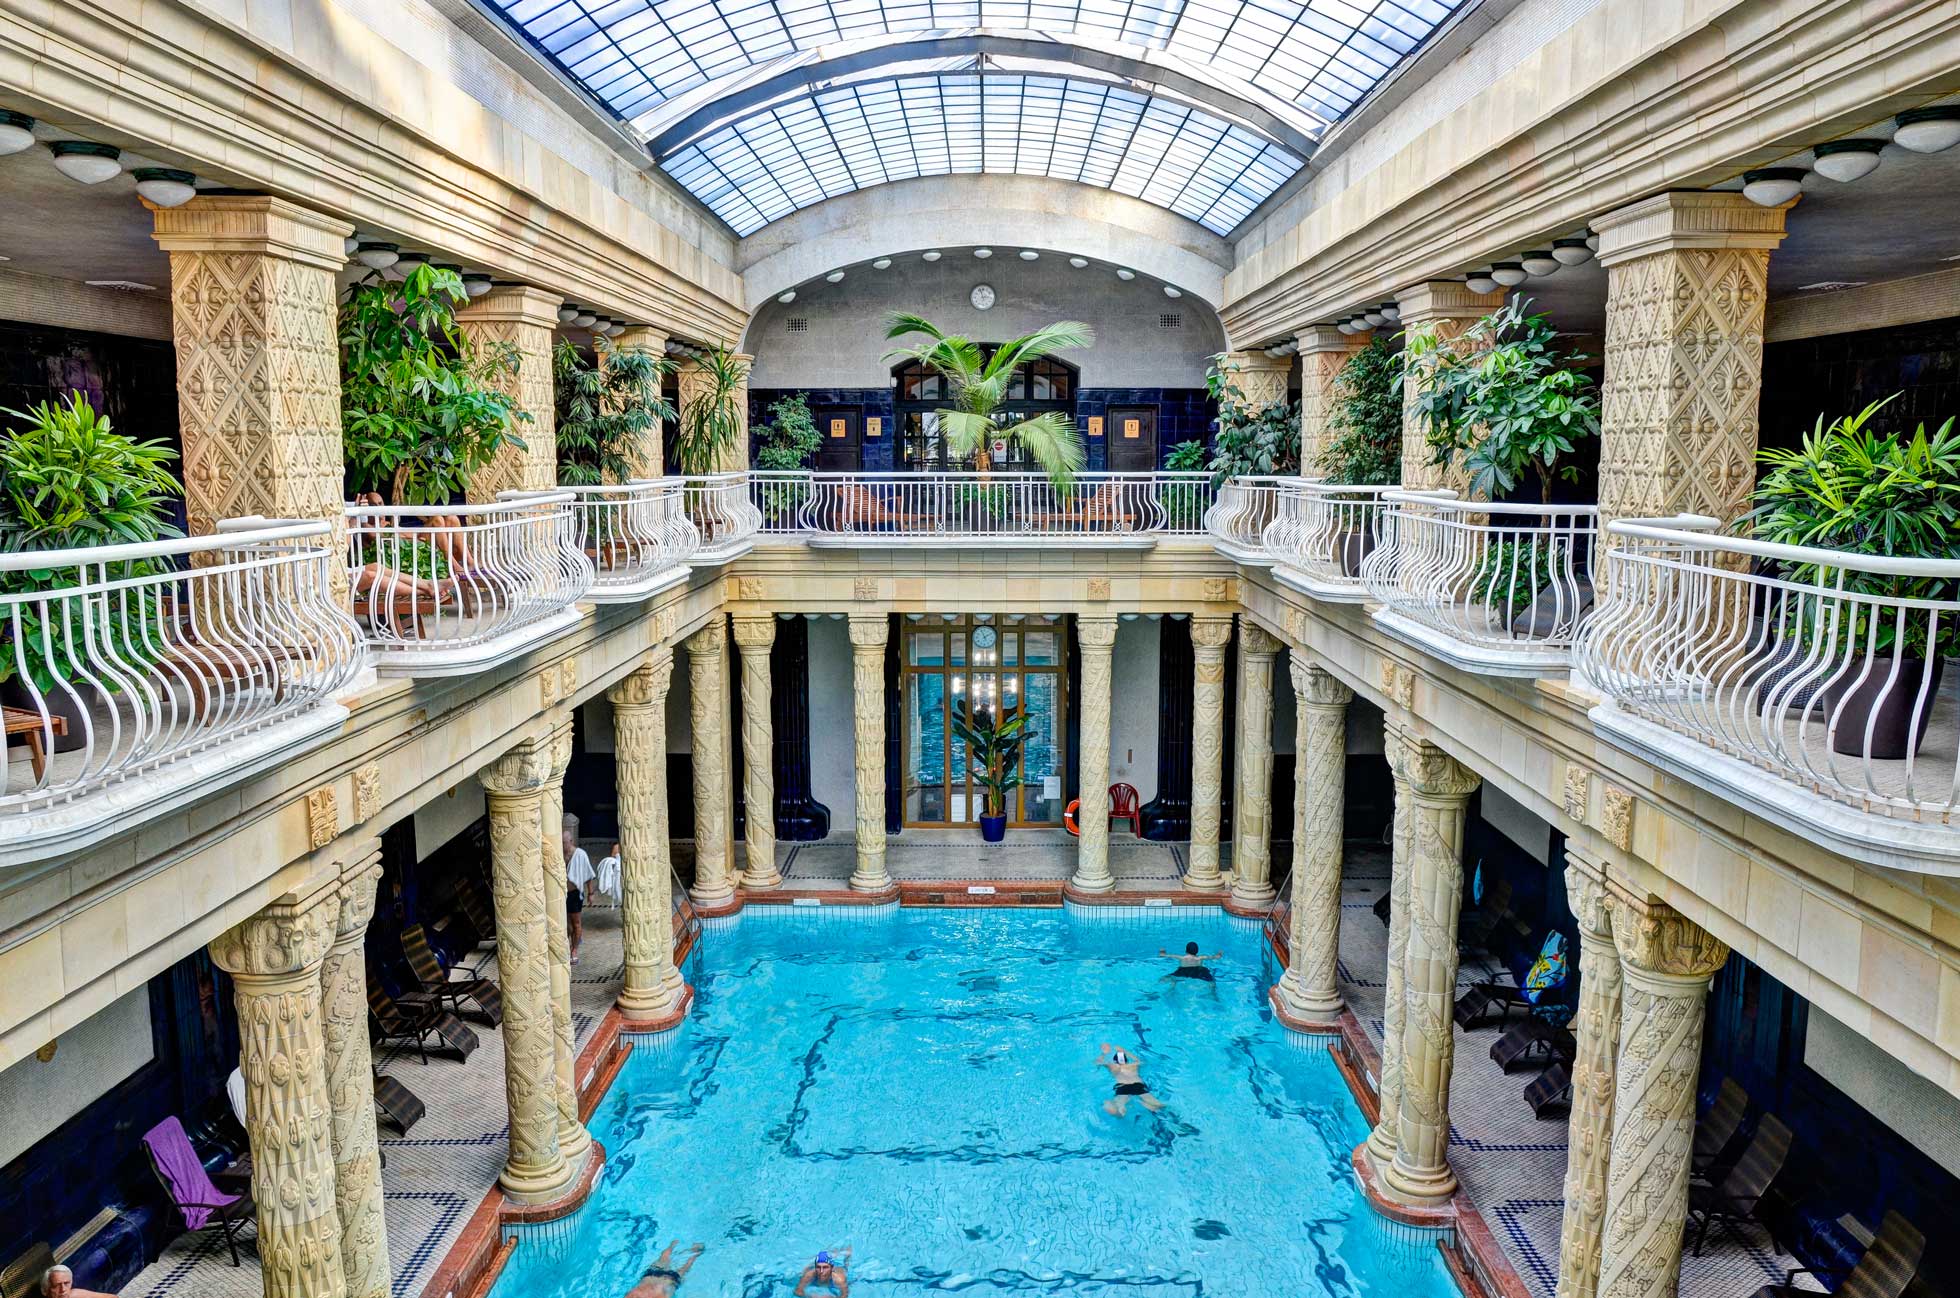 Gör ett avbrott i konferensen i Budapest med ett termalbad på kända Gellertbadet